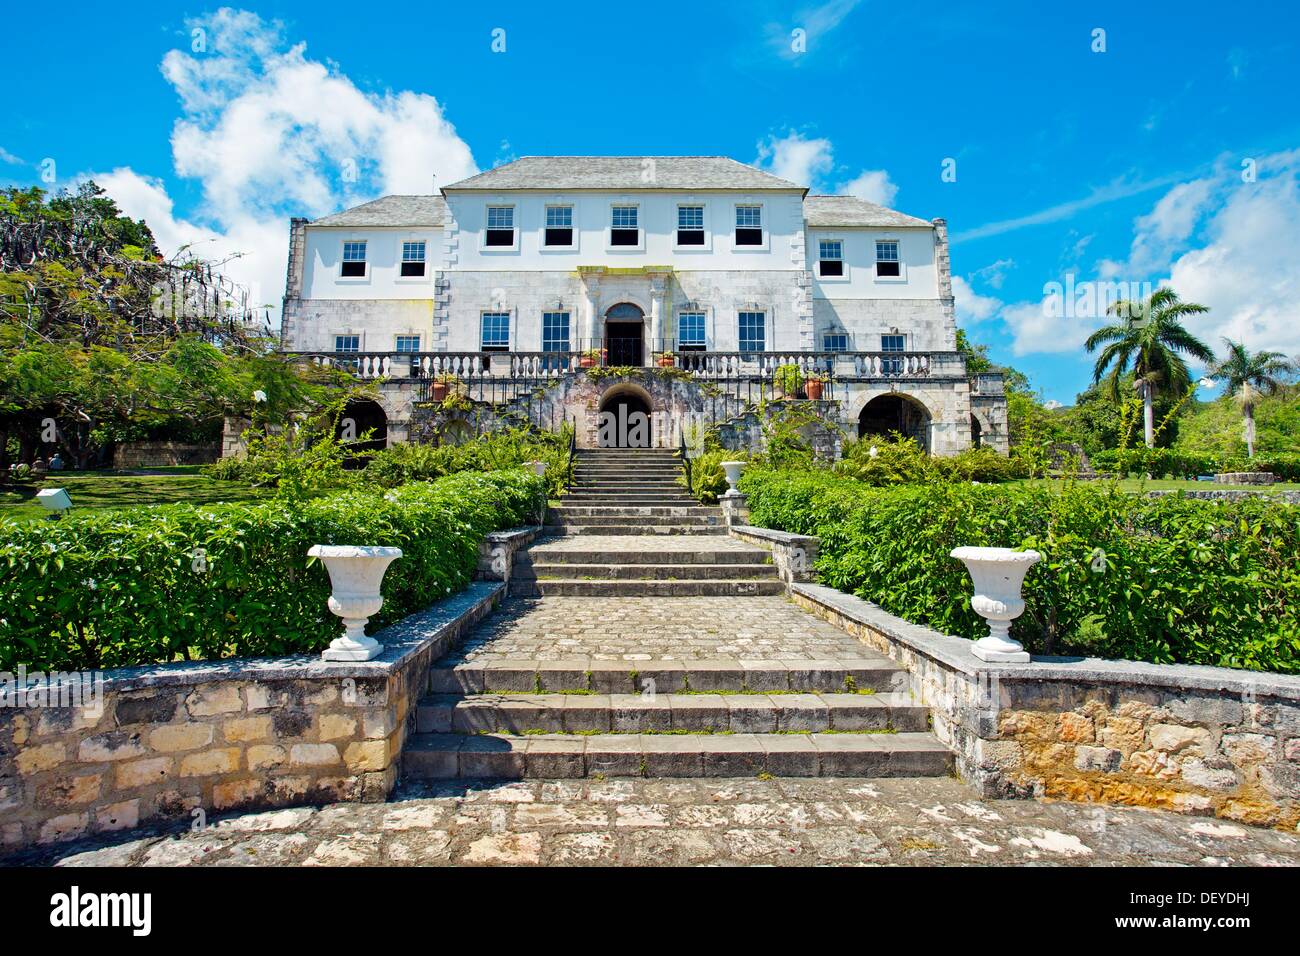 Rose Hall Great House gebaut im Jahre 1770, in der Nähe von Montego Bay, Jamaika, Westindische Inseln, Karibik, Mittelamerika. Stockfoto